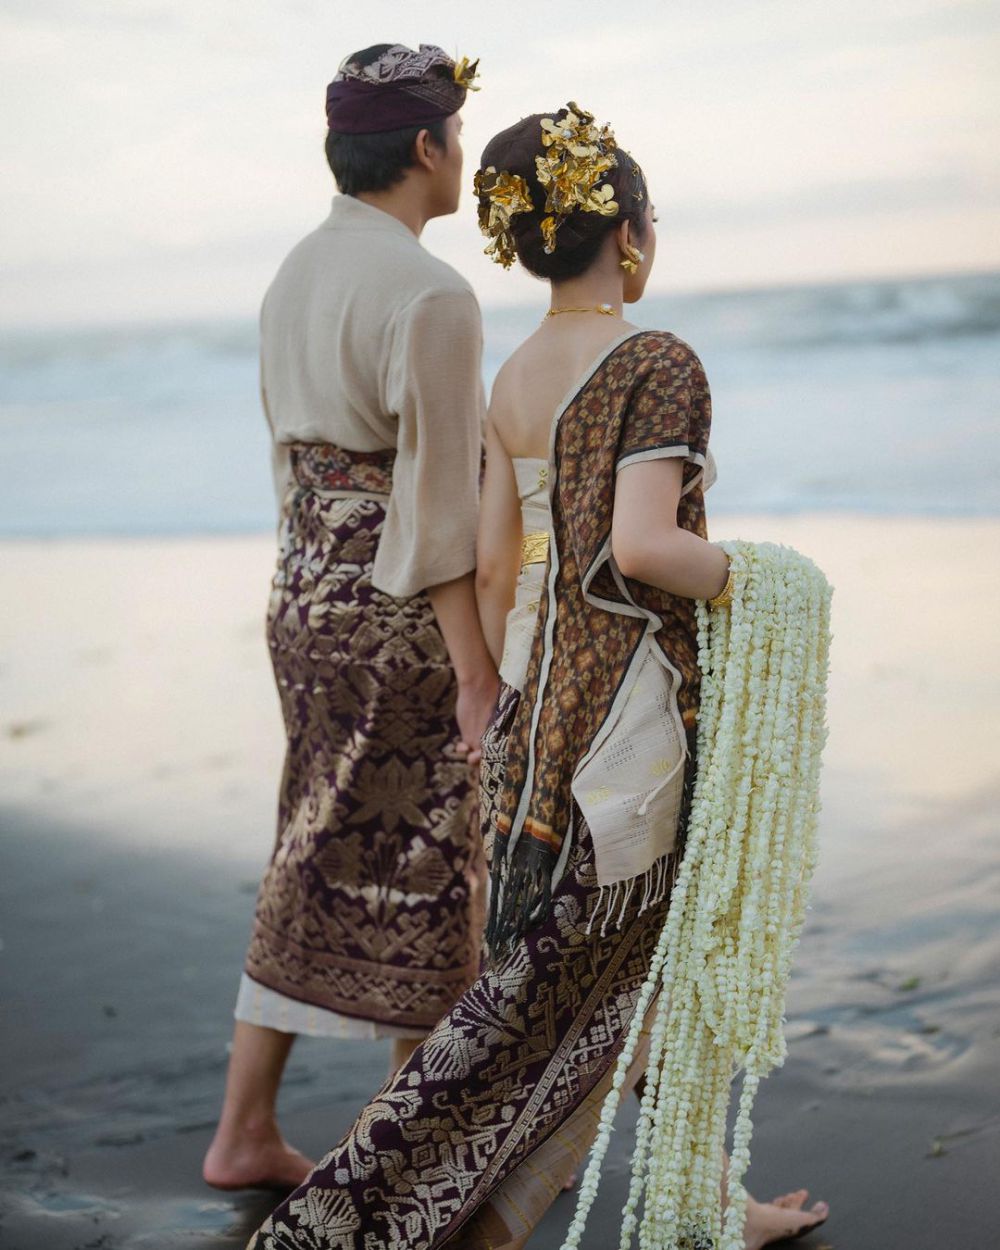 8 Foto Prewedding Mahalini dan Rizky Febian di Tepi Pantai, Syahdu!